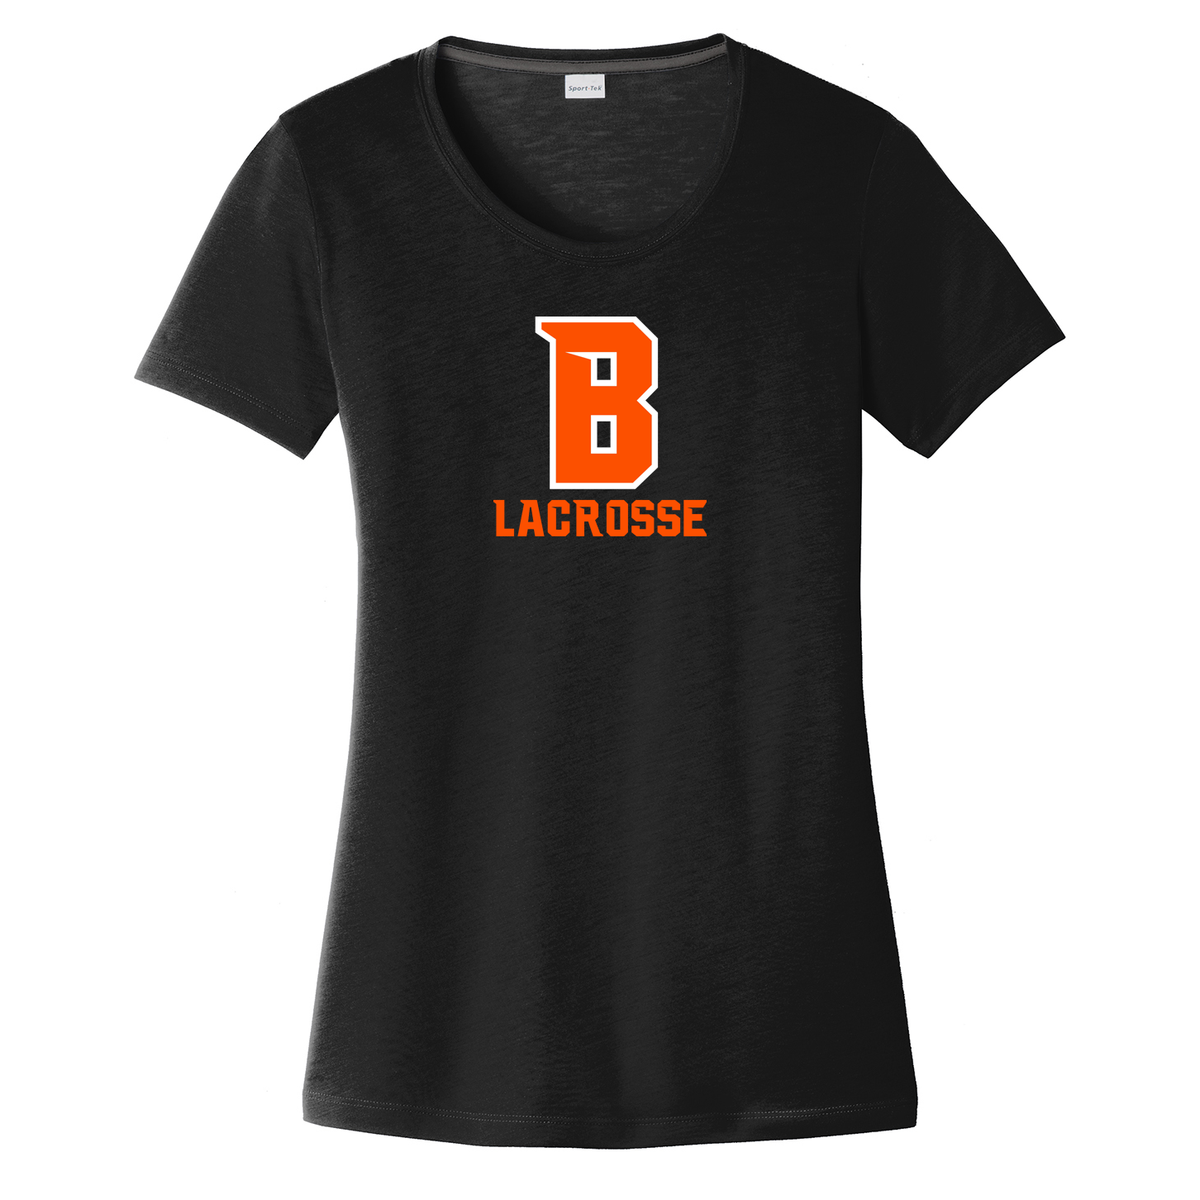 Babylon Lacrosse Women's CottonTouch Performance T-Shirt